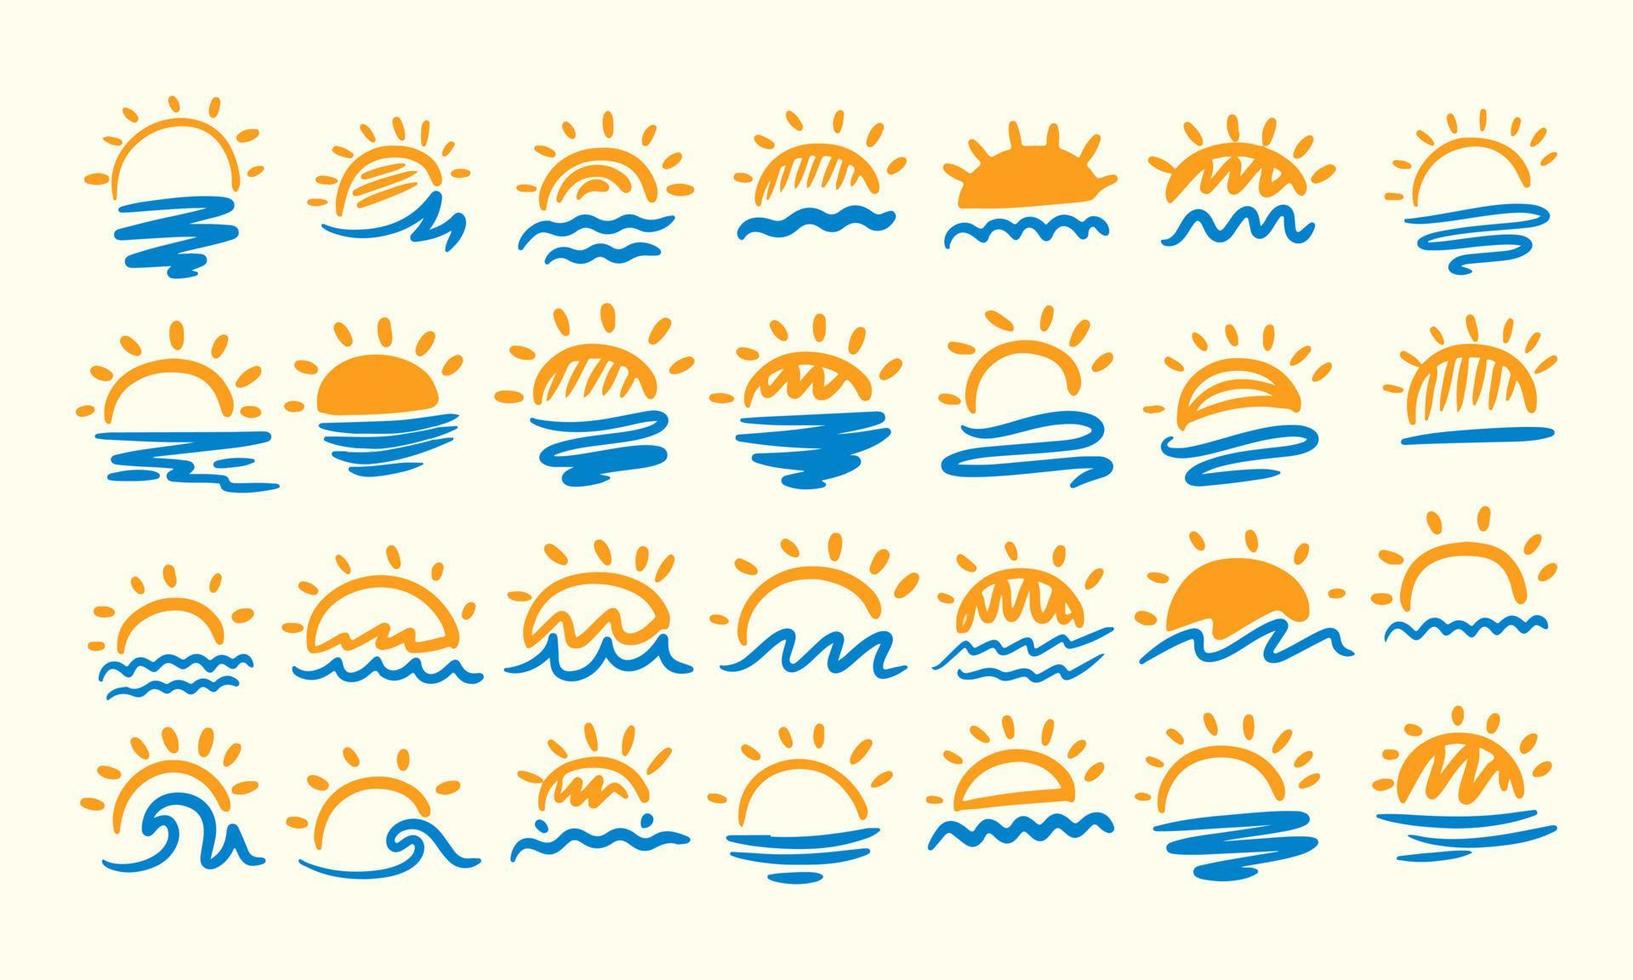 forma abstrata do doodle do ícone do sol da nuvem. conjunto isolado de vetor moderno moderno grande coleção